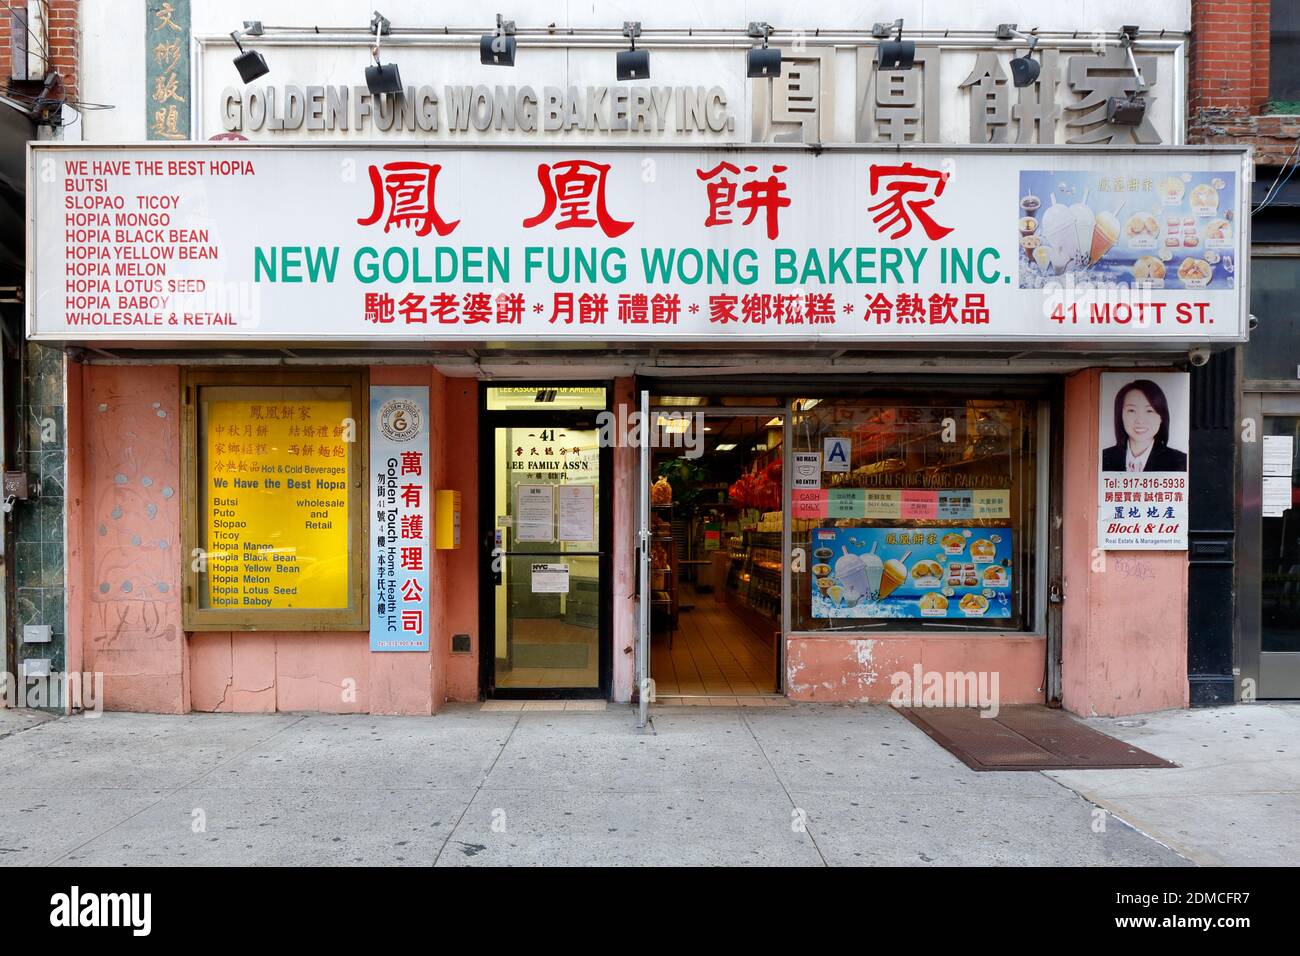 Golden Fung Wong Bakery 鳳凰餅家, 41 Mott St, New York, NY. Façade extérieure d'une boulangerie chinoise dans le quartier chinois de Manhattan. Banque D'Images